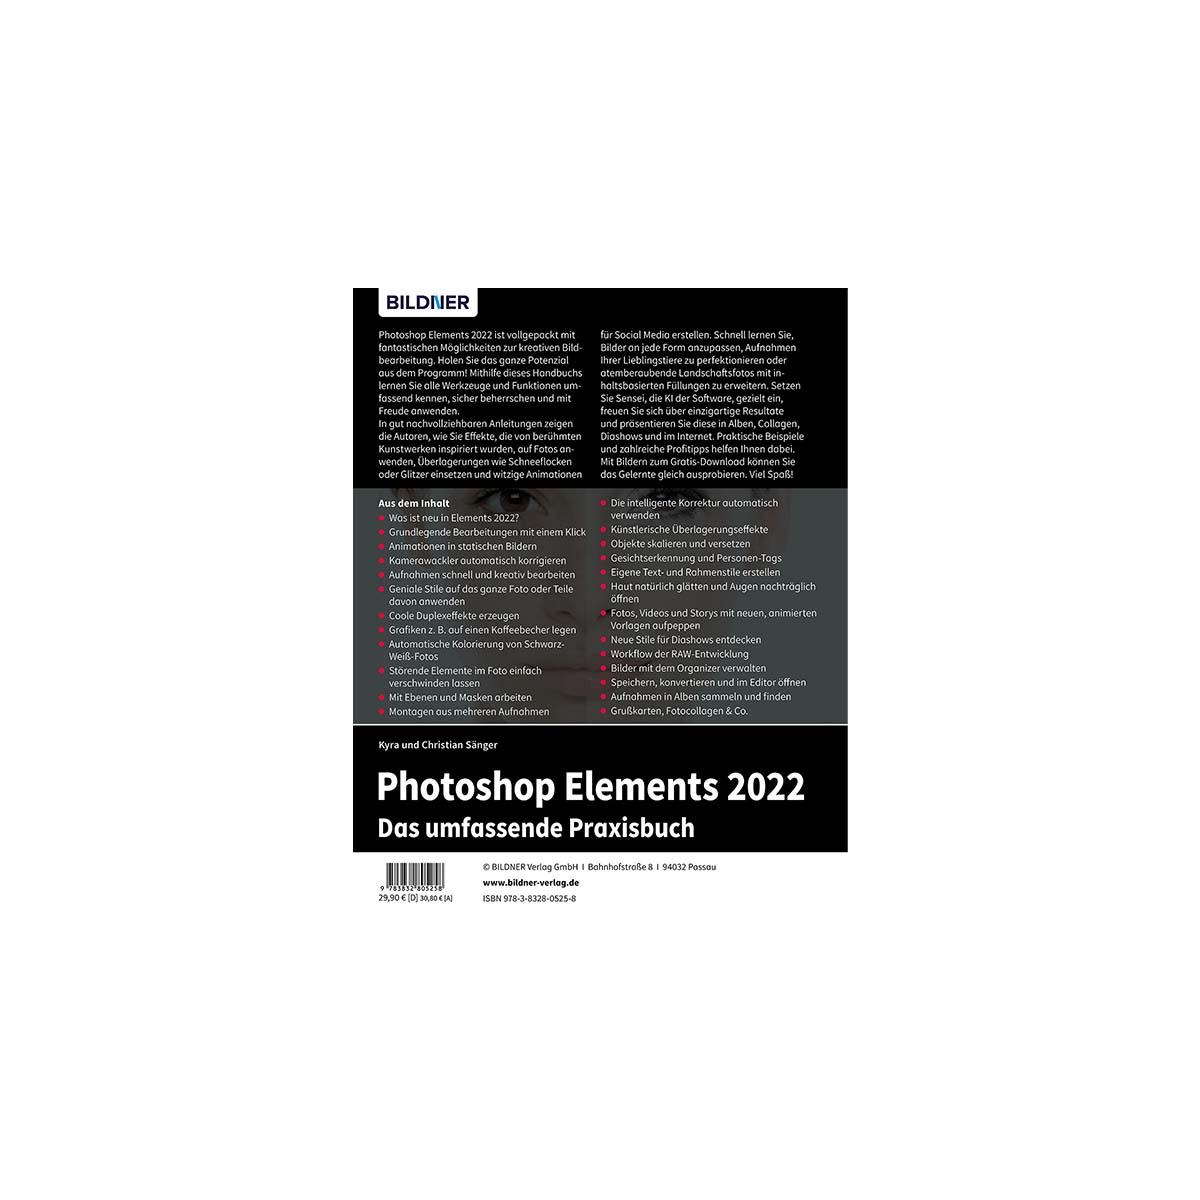 Photoshop Elements Das - 2022 Praxisbuch! umfangreiche